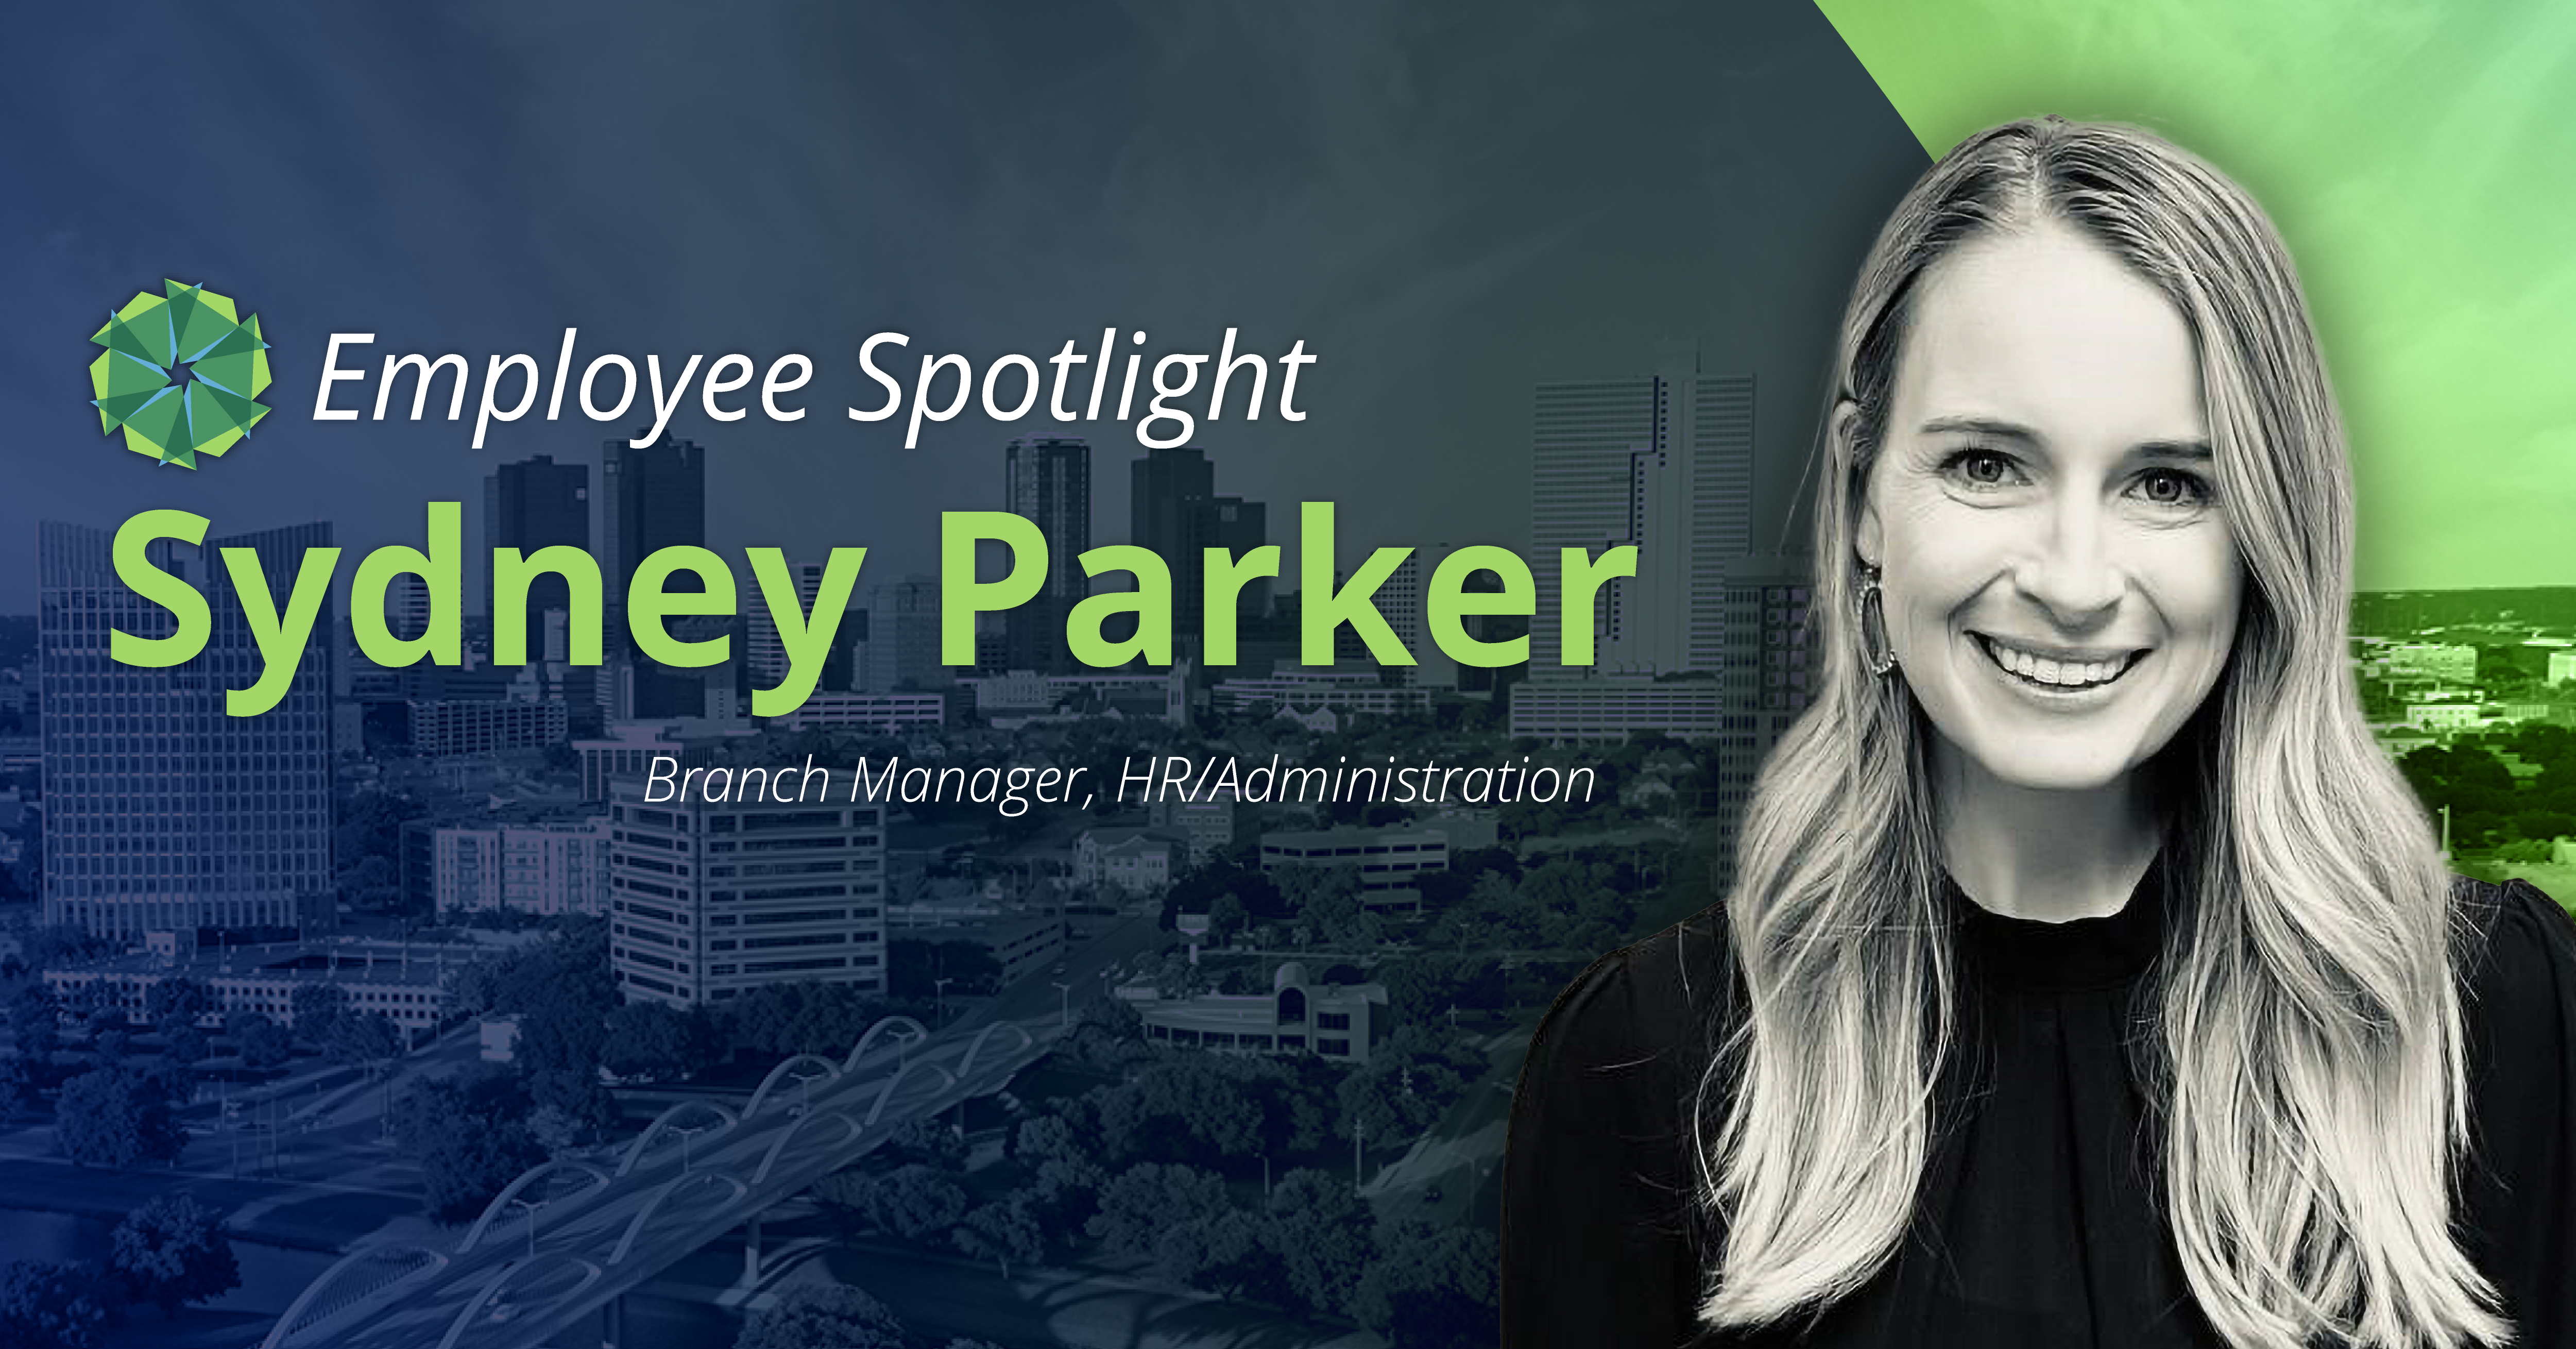 Sydney Parker employee spotlight